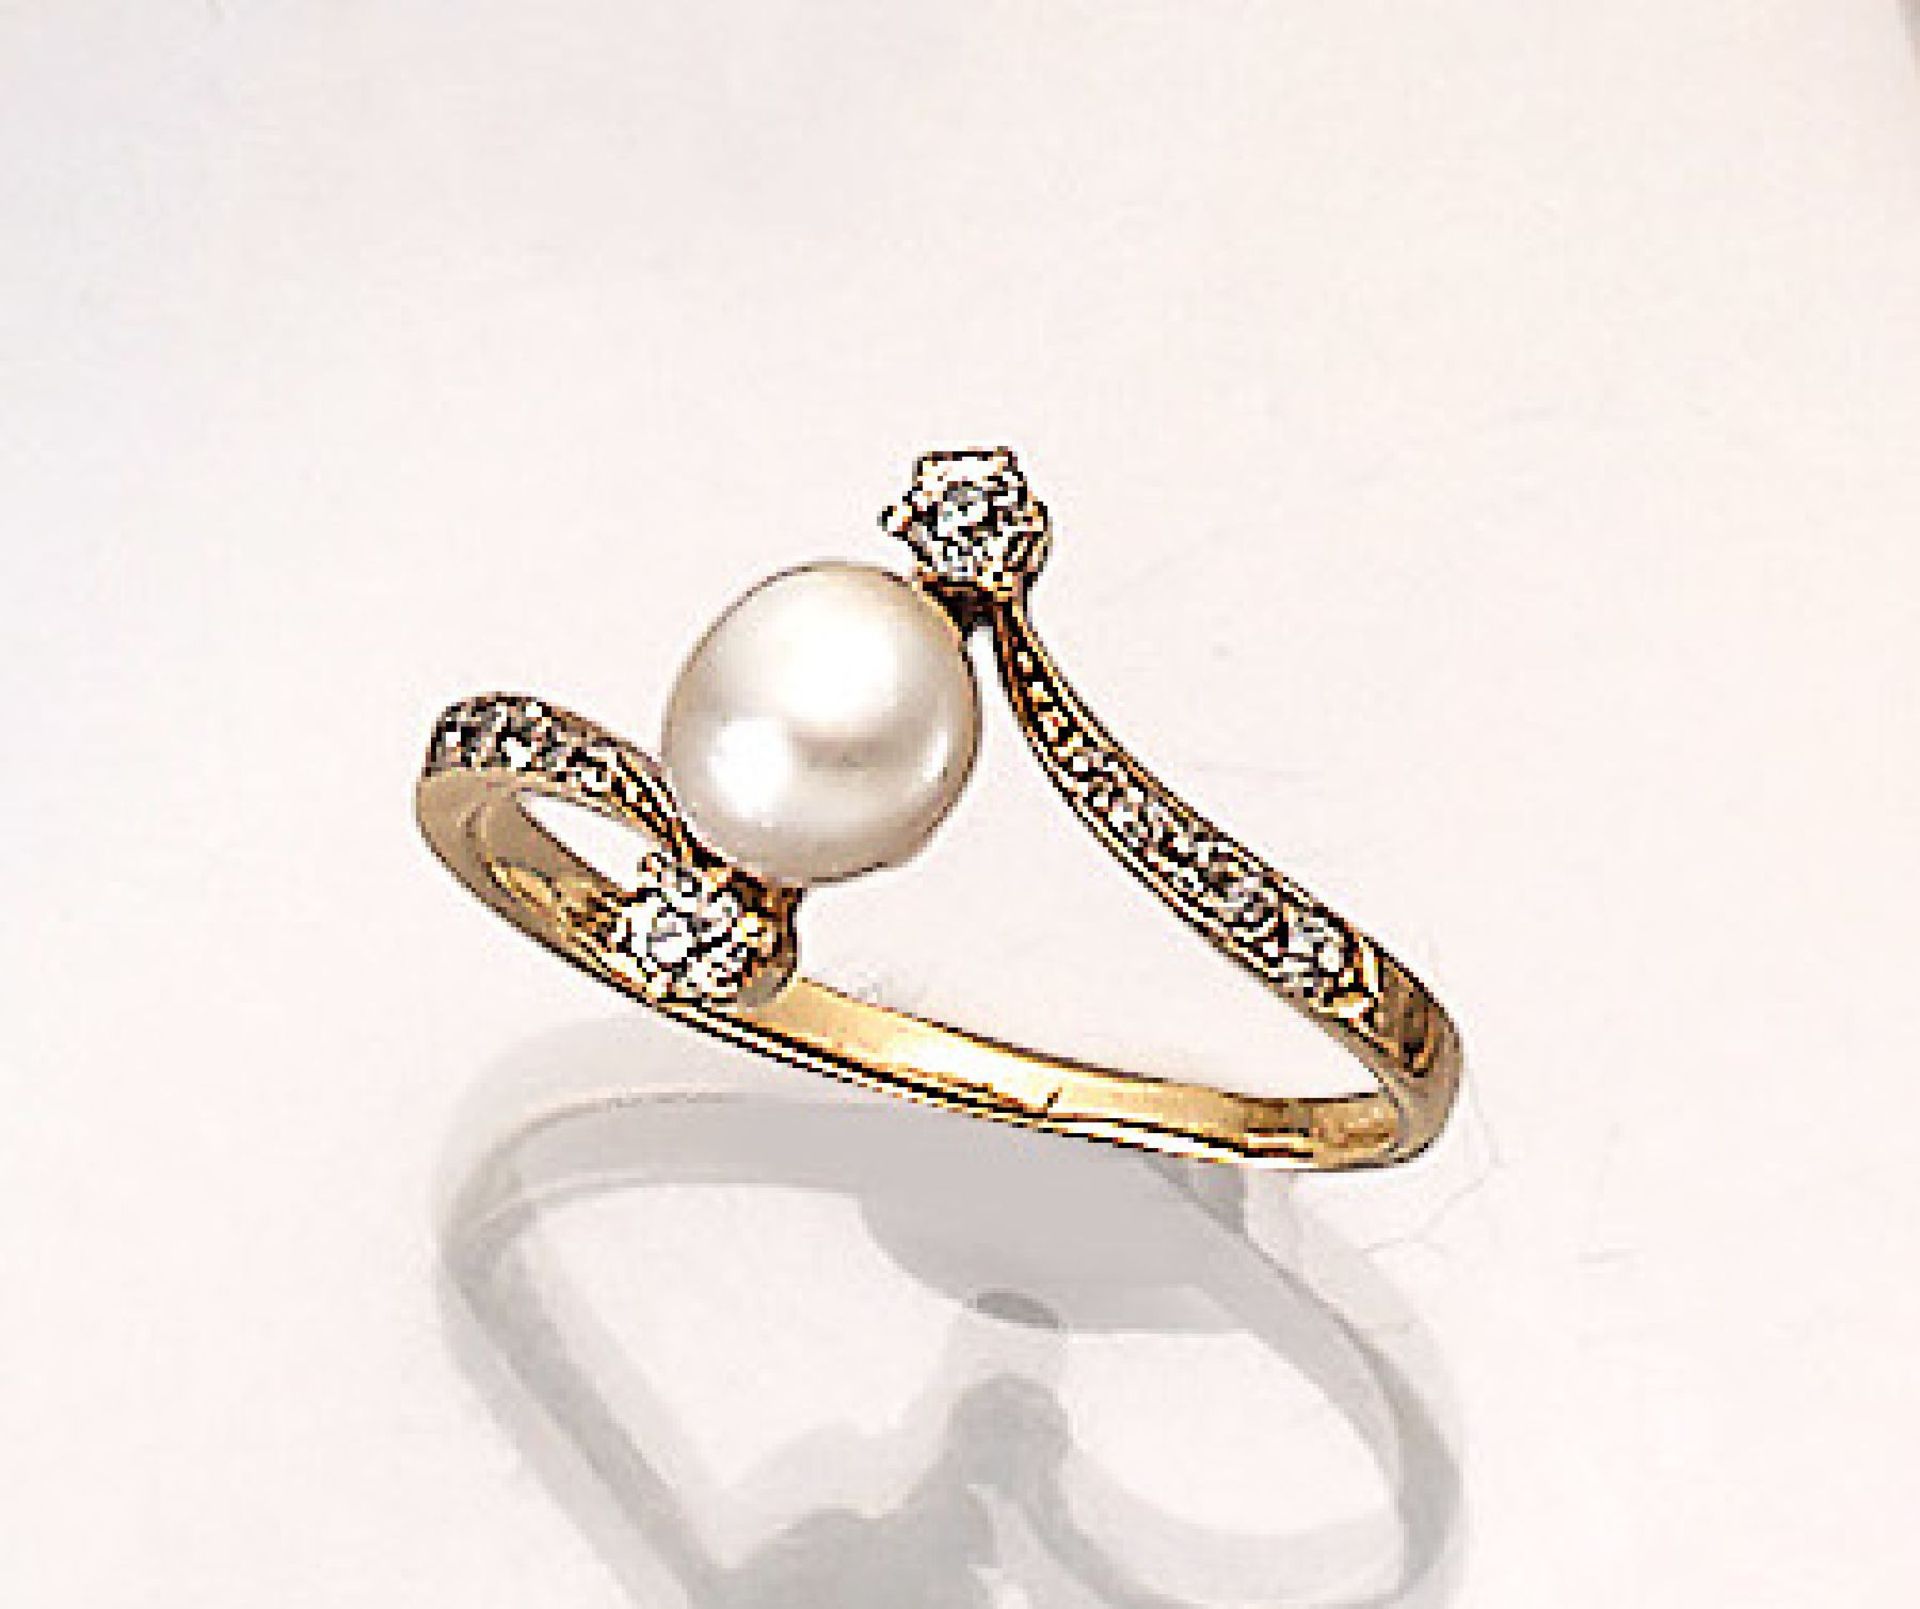 Jugendstilring mit Orientperle und Diamanten, GG 750/000, um 1900, mittig mit einer Perle,